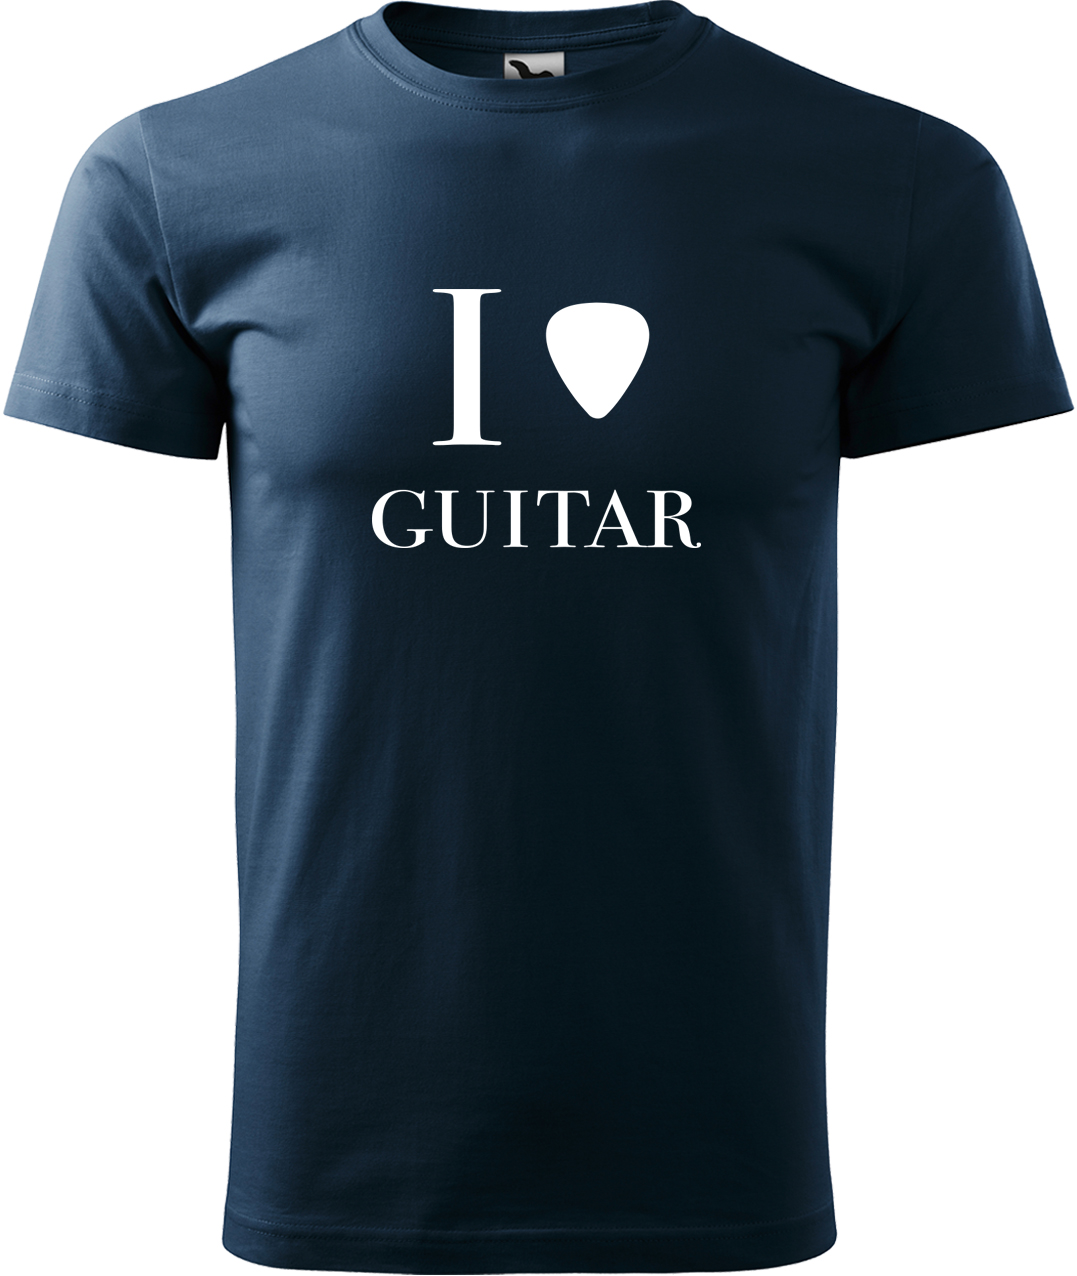 Pánské tričko s kytarou - I love guitar Velikost: 4XL, Barva: Námořní modrá (02), Střih: pánský